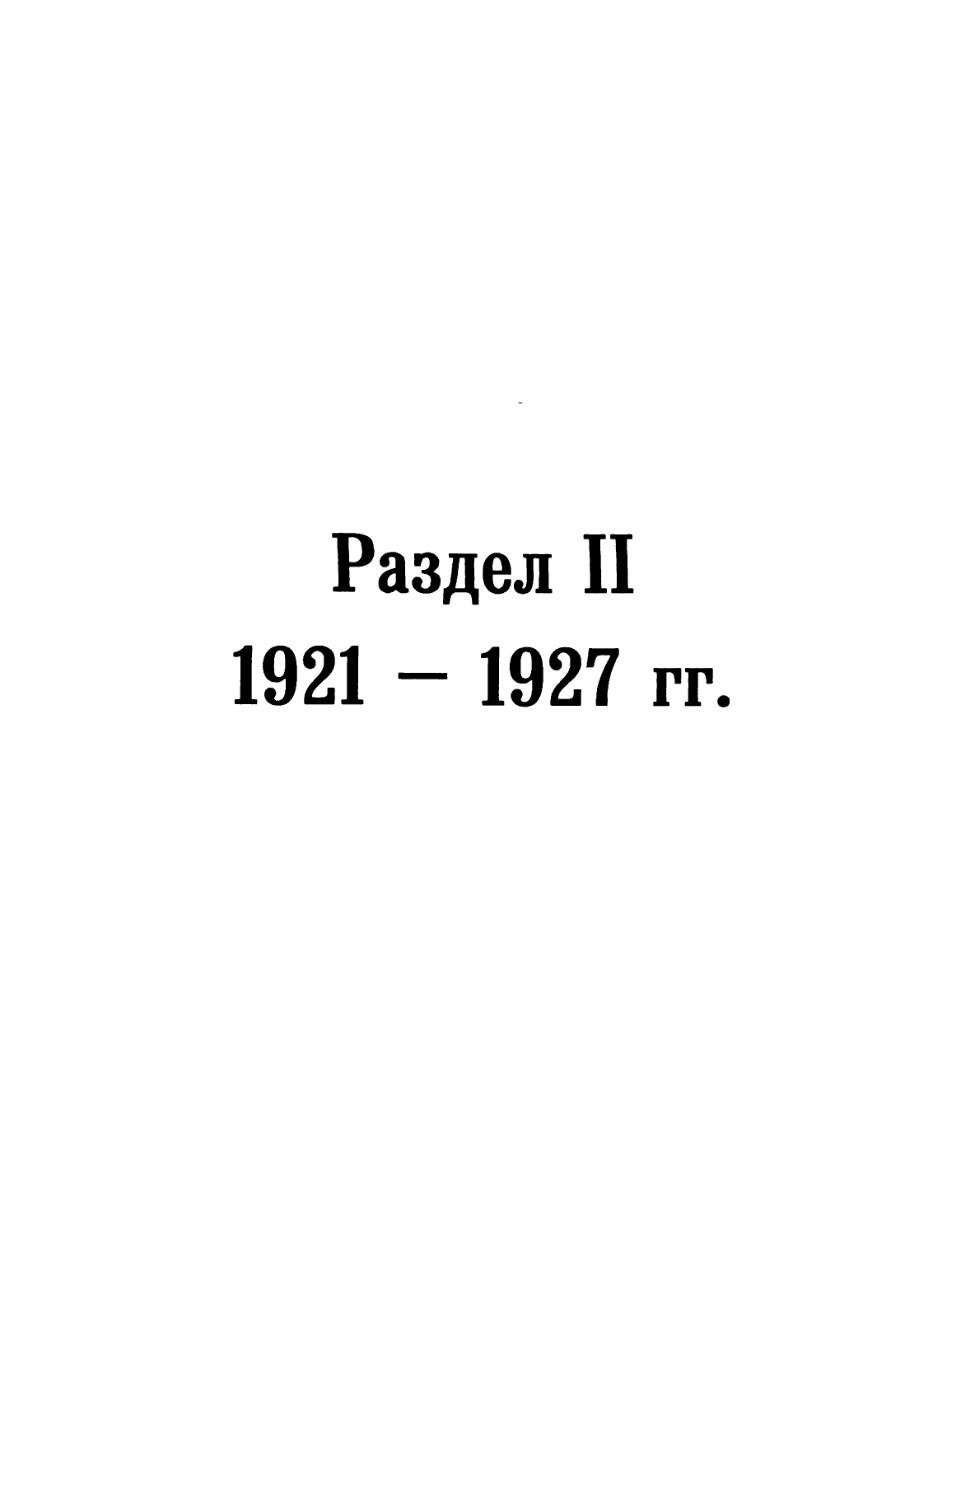 Раздел II. 1921 — 1927 гг.